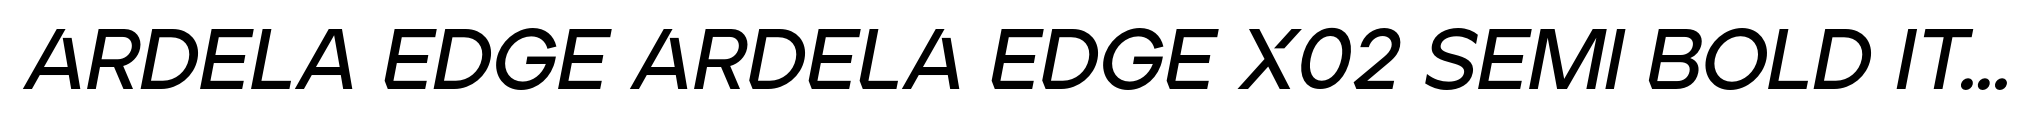 Ardela Edge ARDELA EDGE X02 Semi Bold Italic image